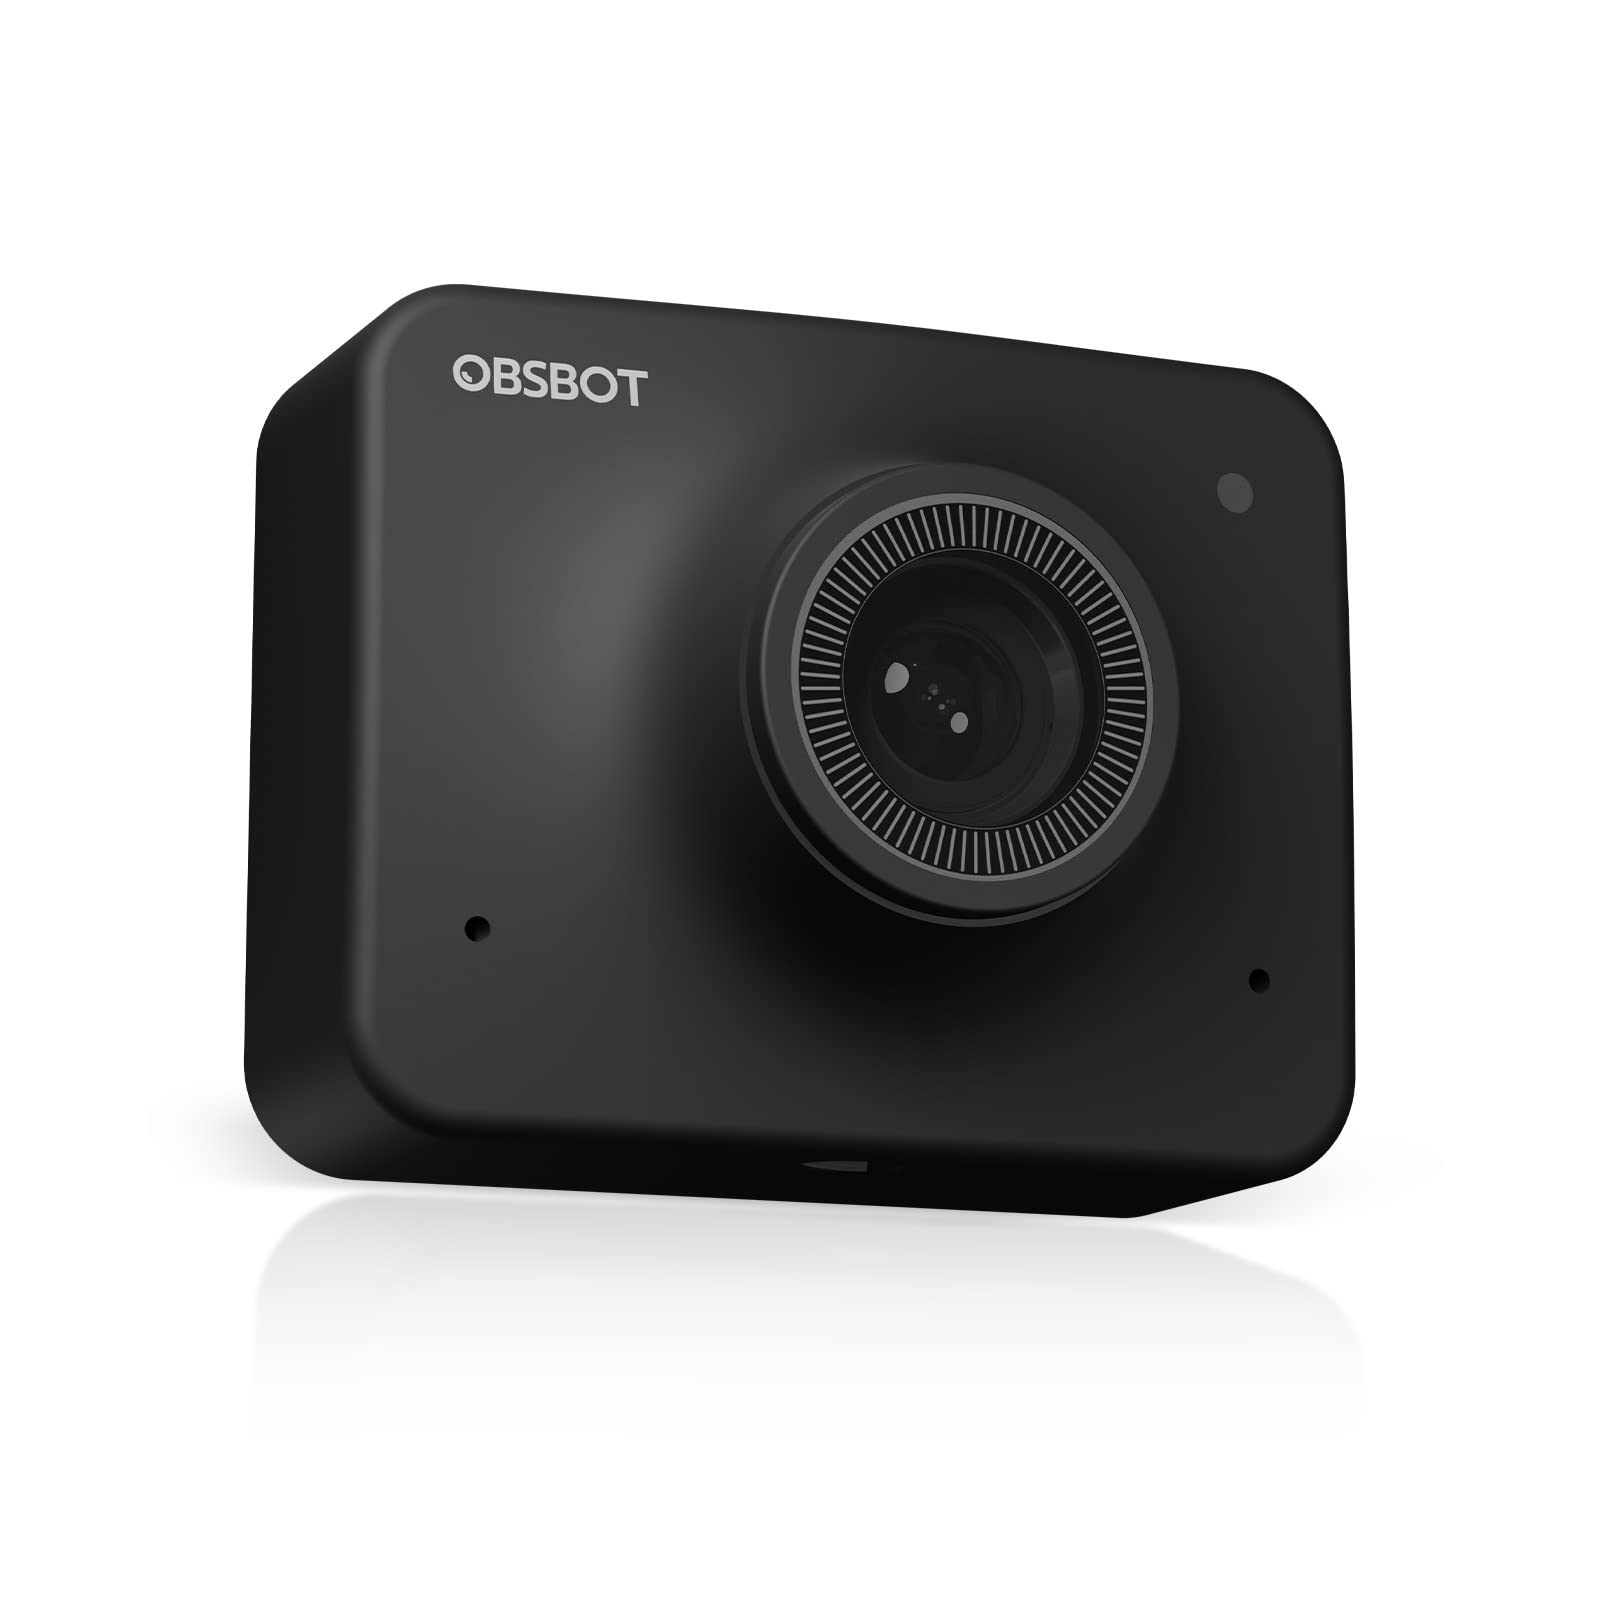  OBSBOT Веб-камера 1080P Ultra HD с поддержкой AI Веб-камера 1080P для видеоконференций с AI Auto Framing Auto-Focus HDR и двукратным циф...